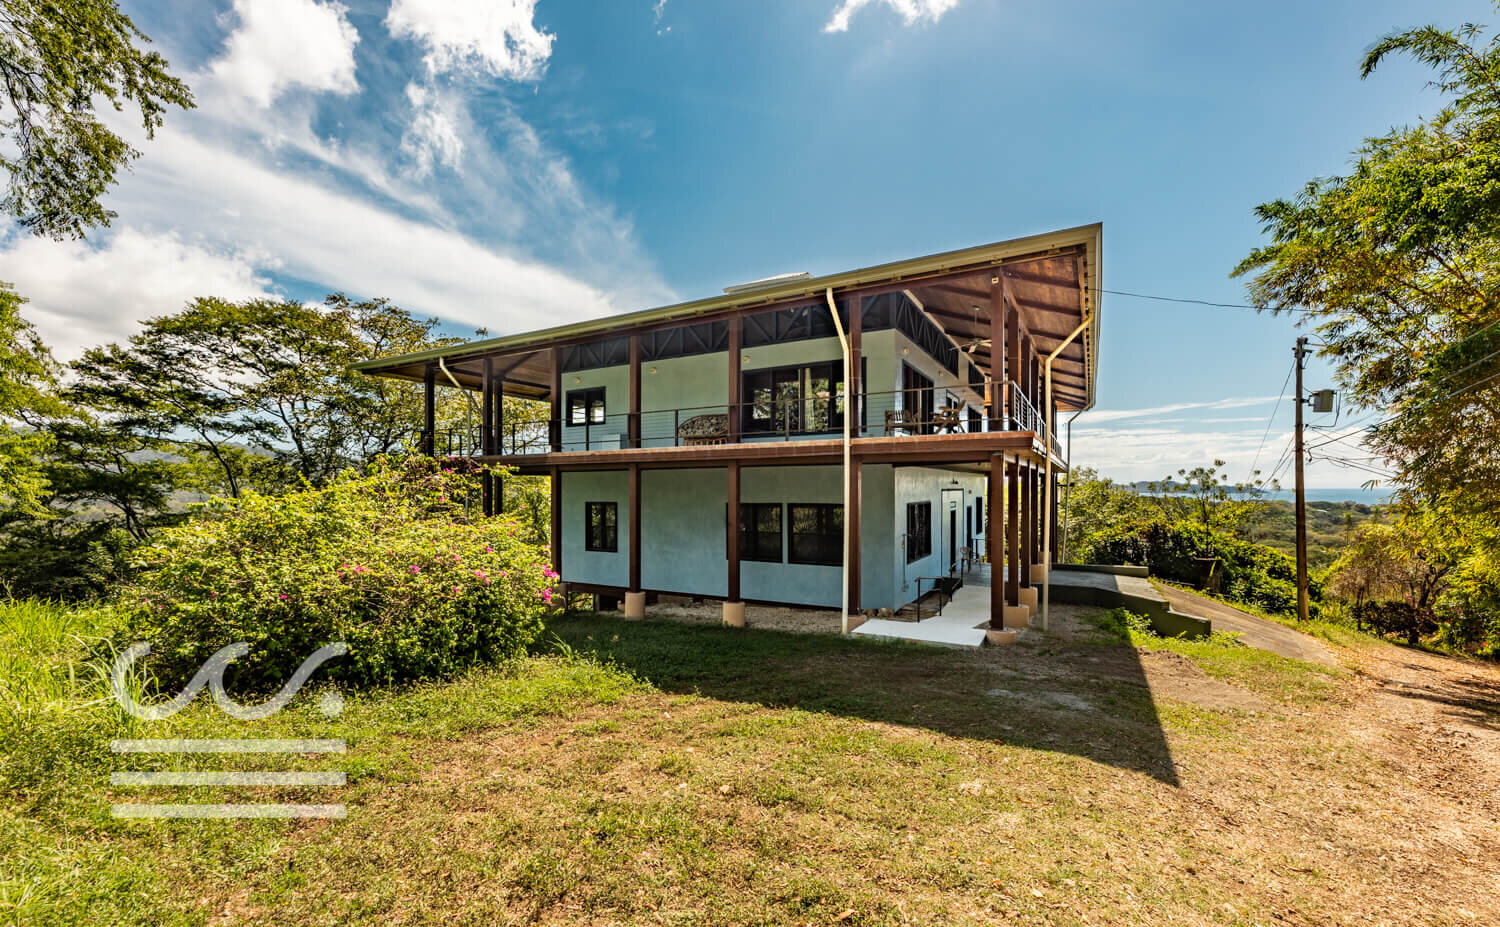 Casa-Vino-Wanderlust-Realty-Real-Estate-Rentals-Nosara-Costa-Rica-12.jpg